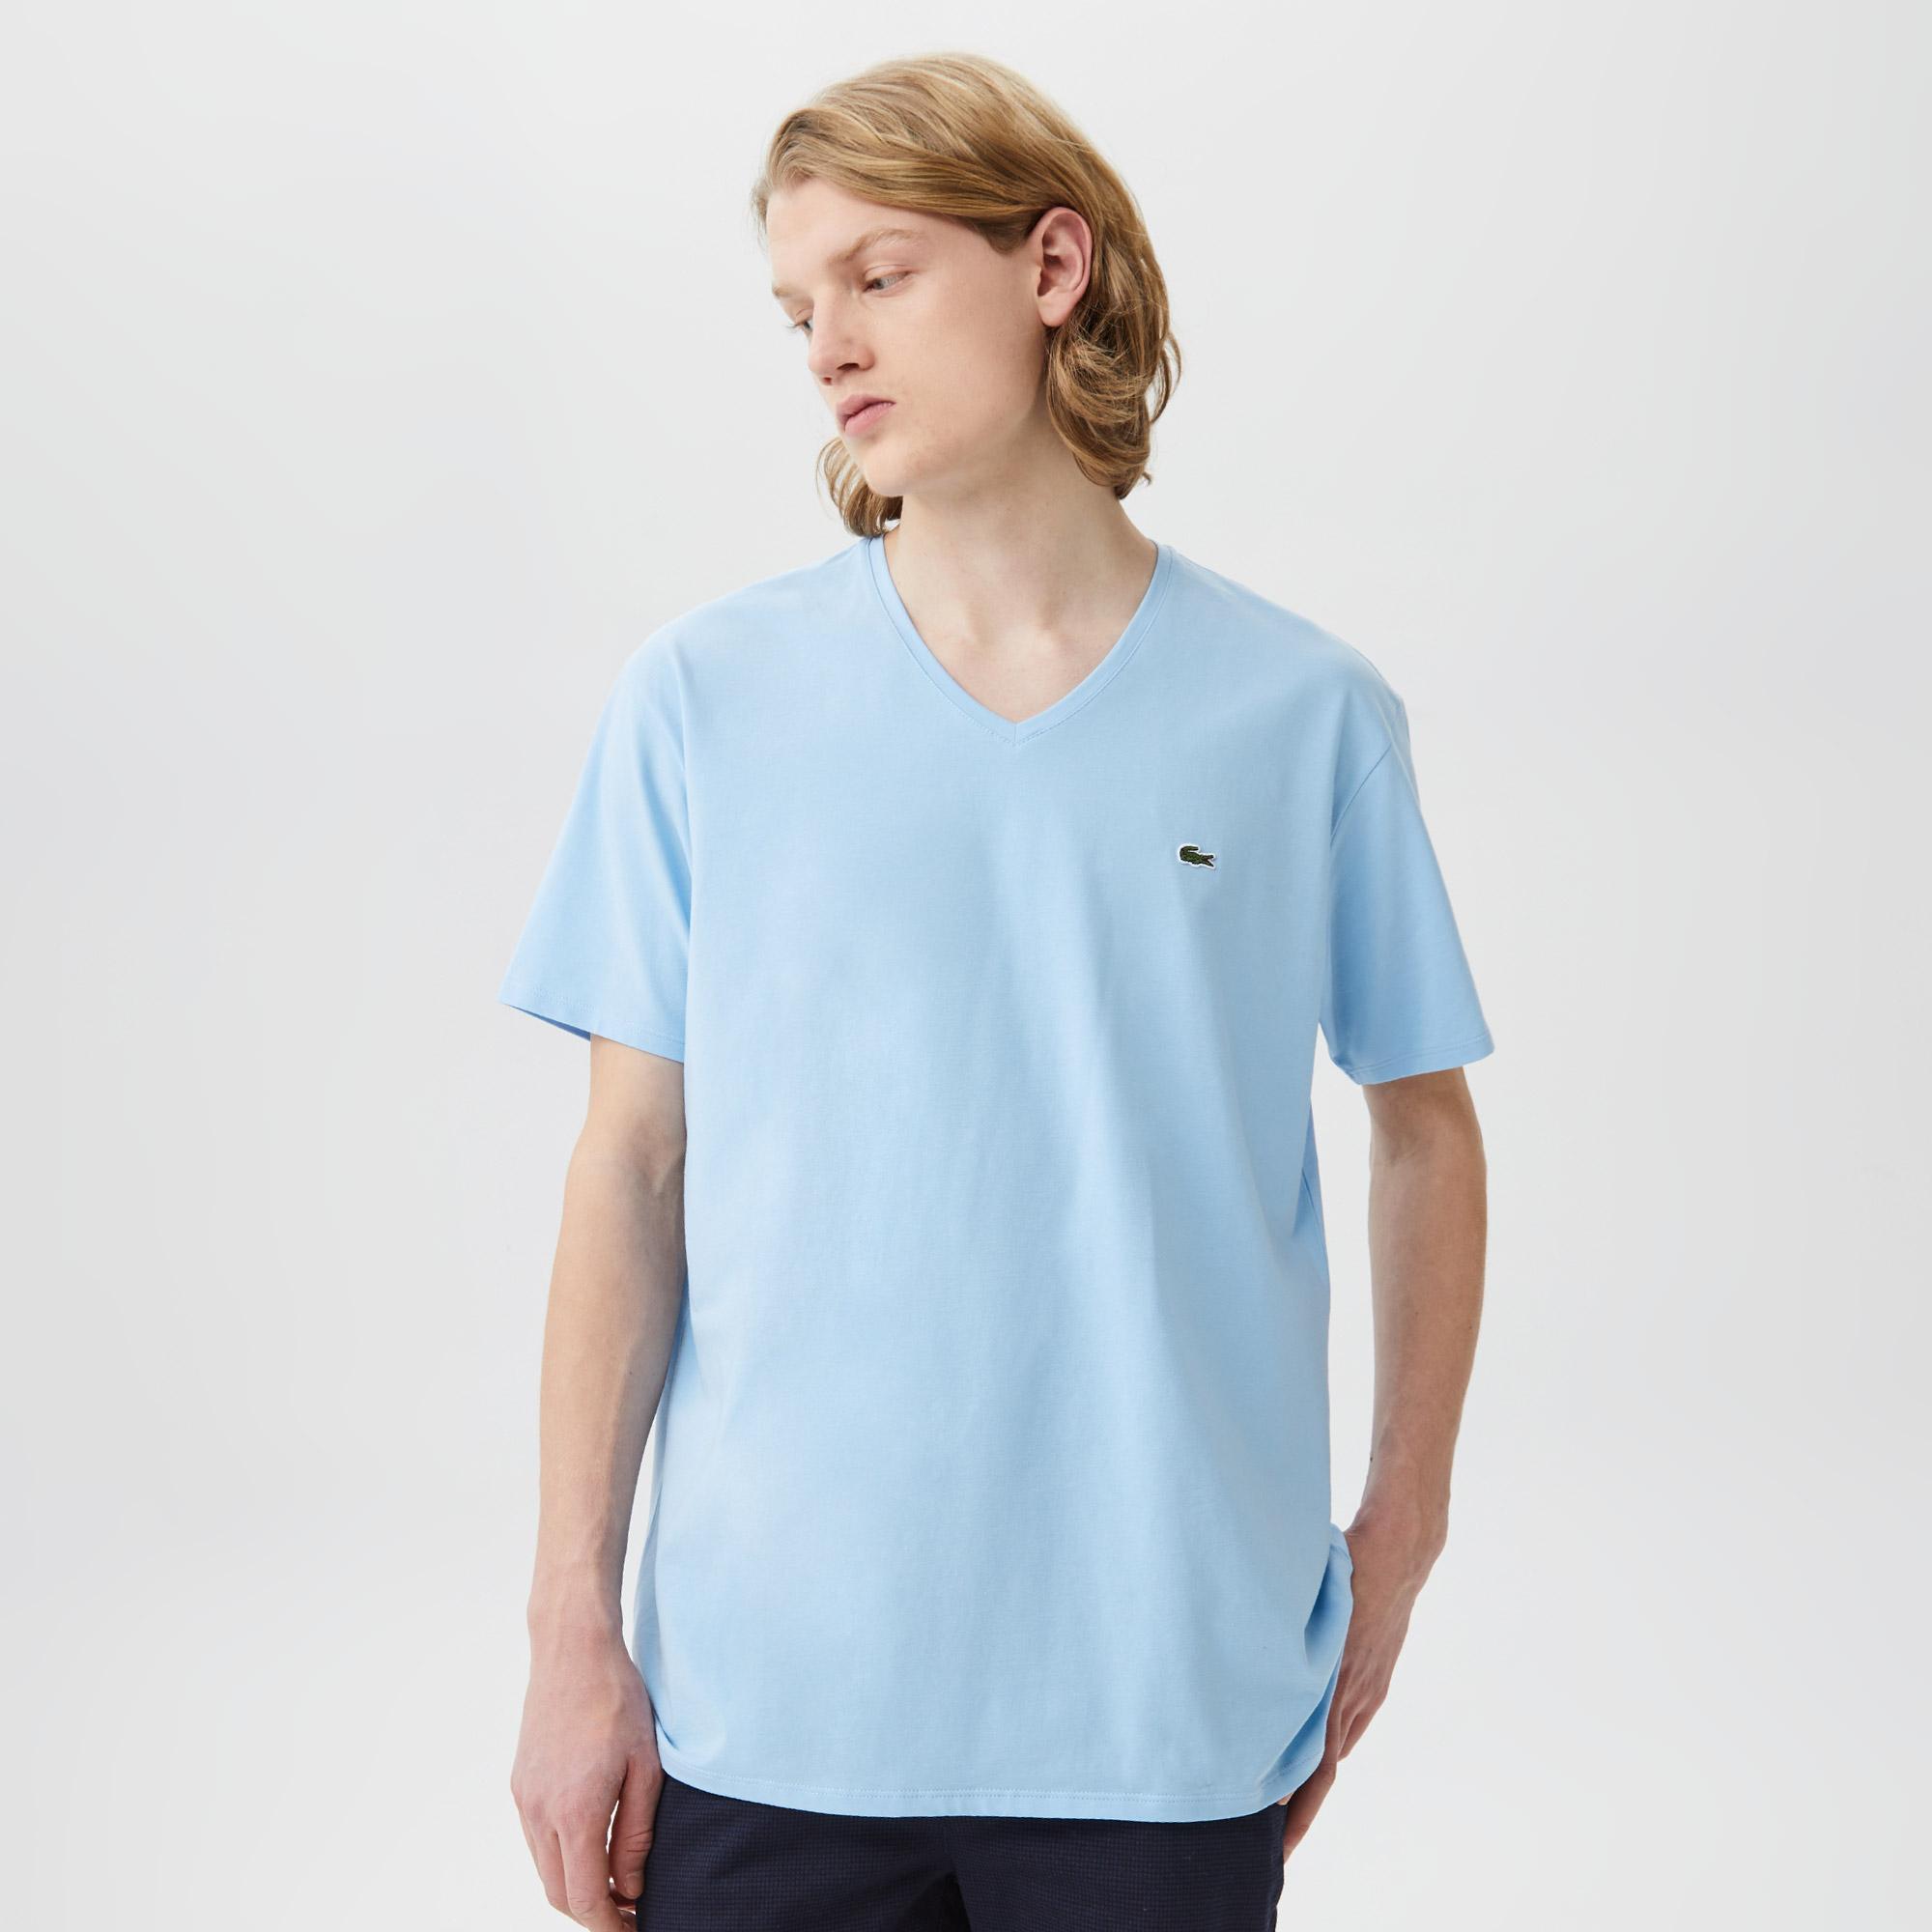 Lacoste Erkek Slim Fit V Yaka Açık Mavi T-Shirt. 4